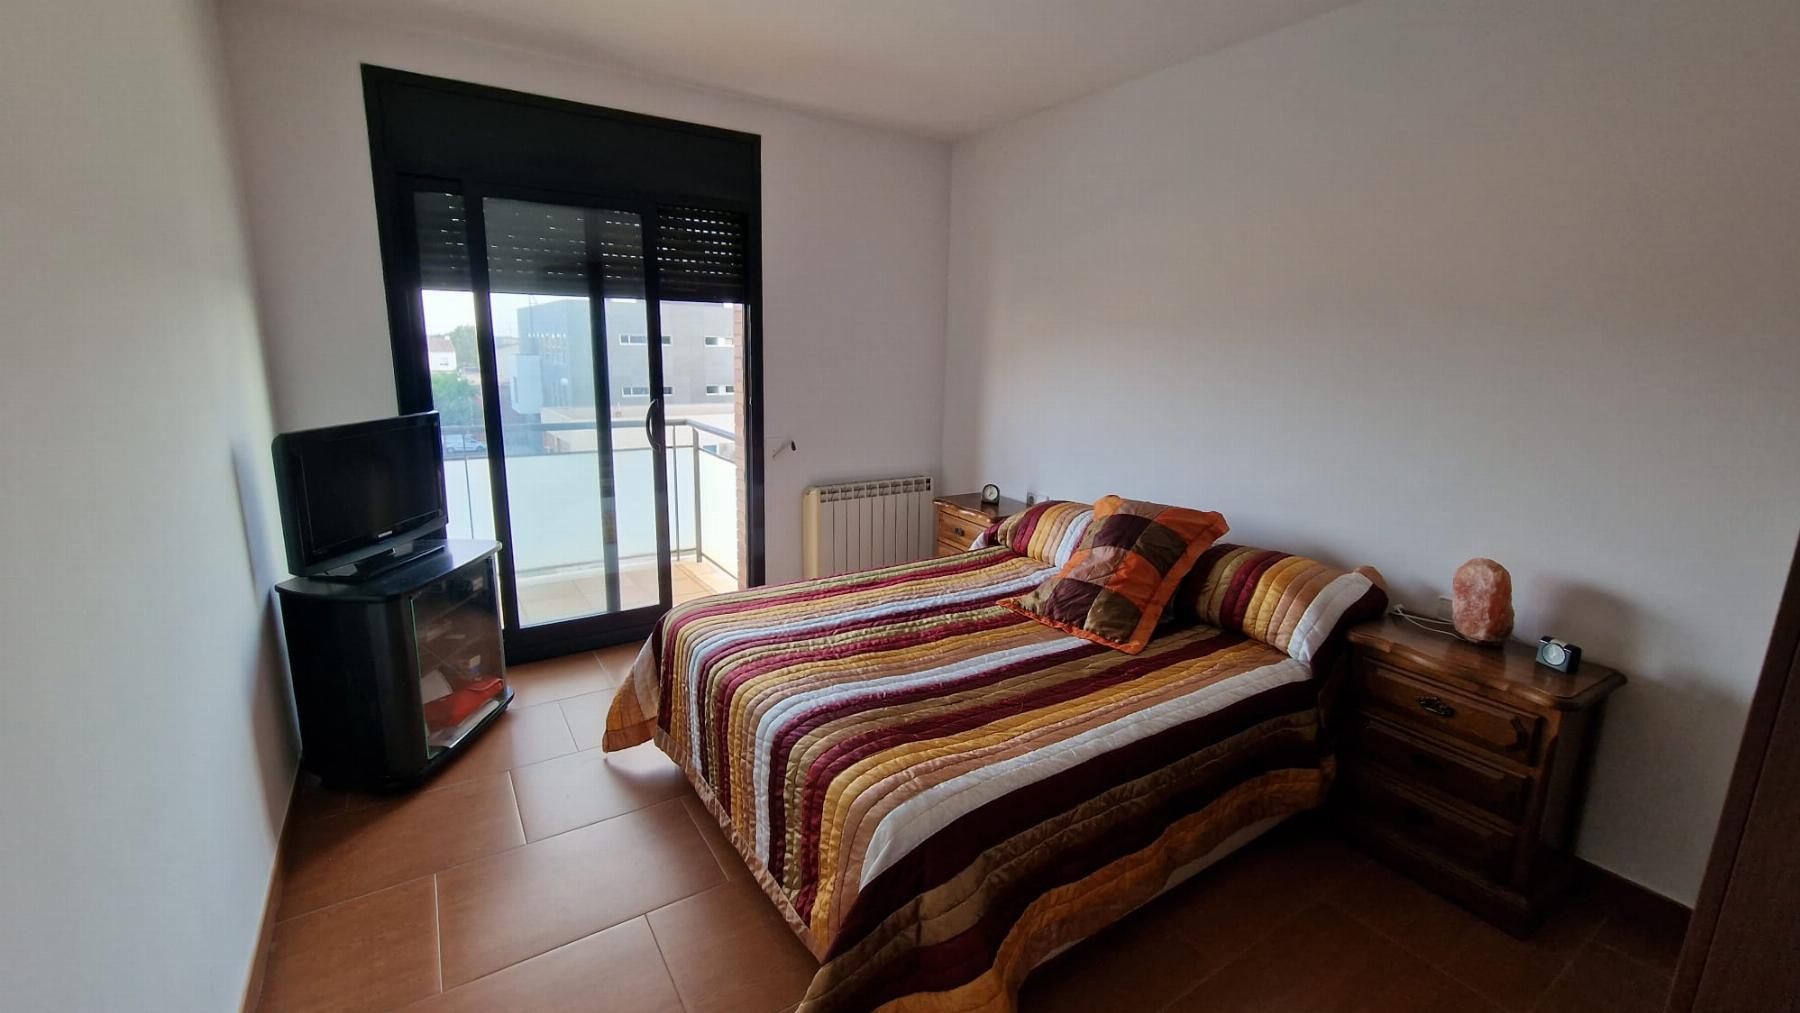 For sale of flat in Llorenç del Penedès